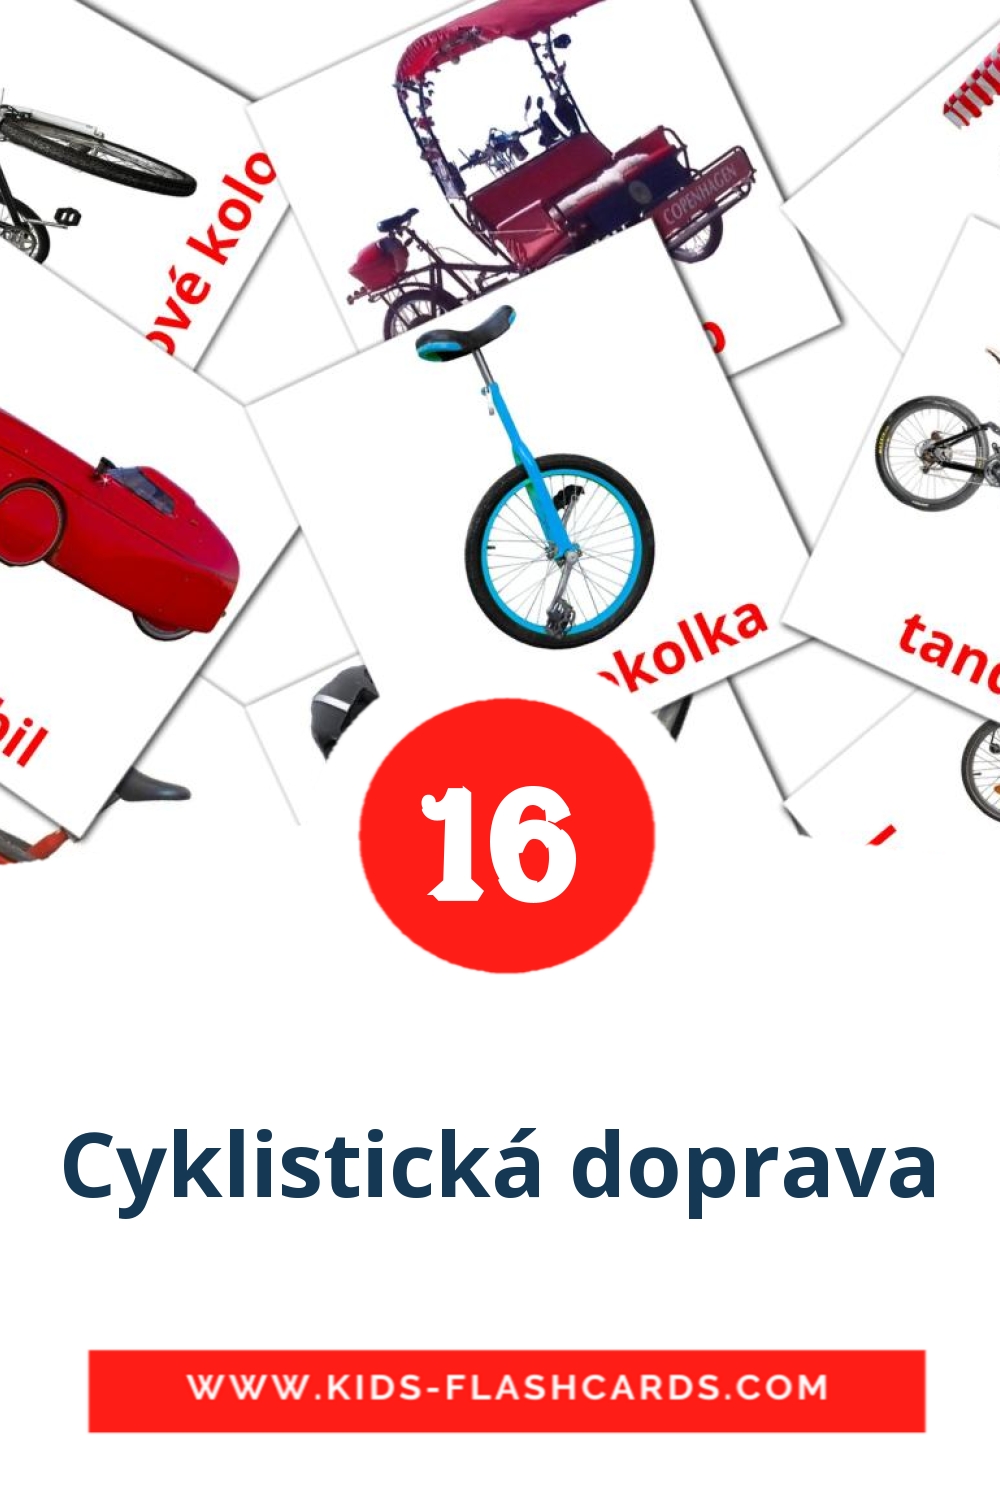 Cyklistická doprava на чешском для Детского Сада (16 карточек)